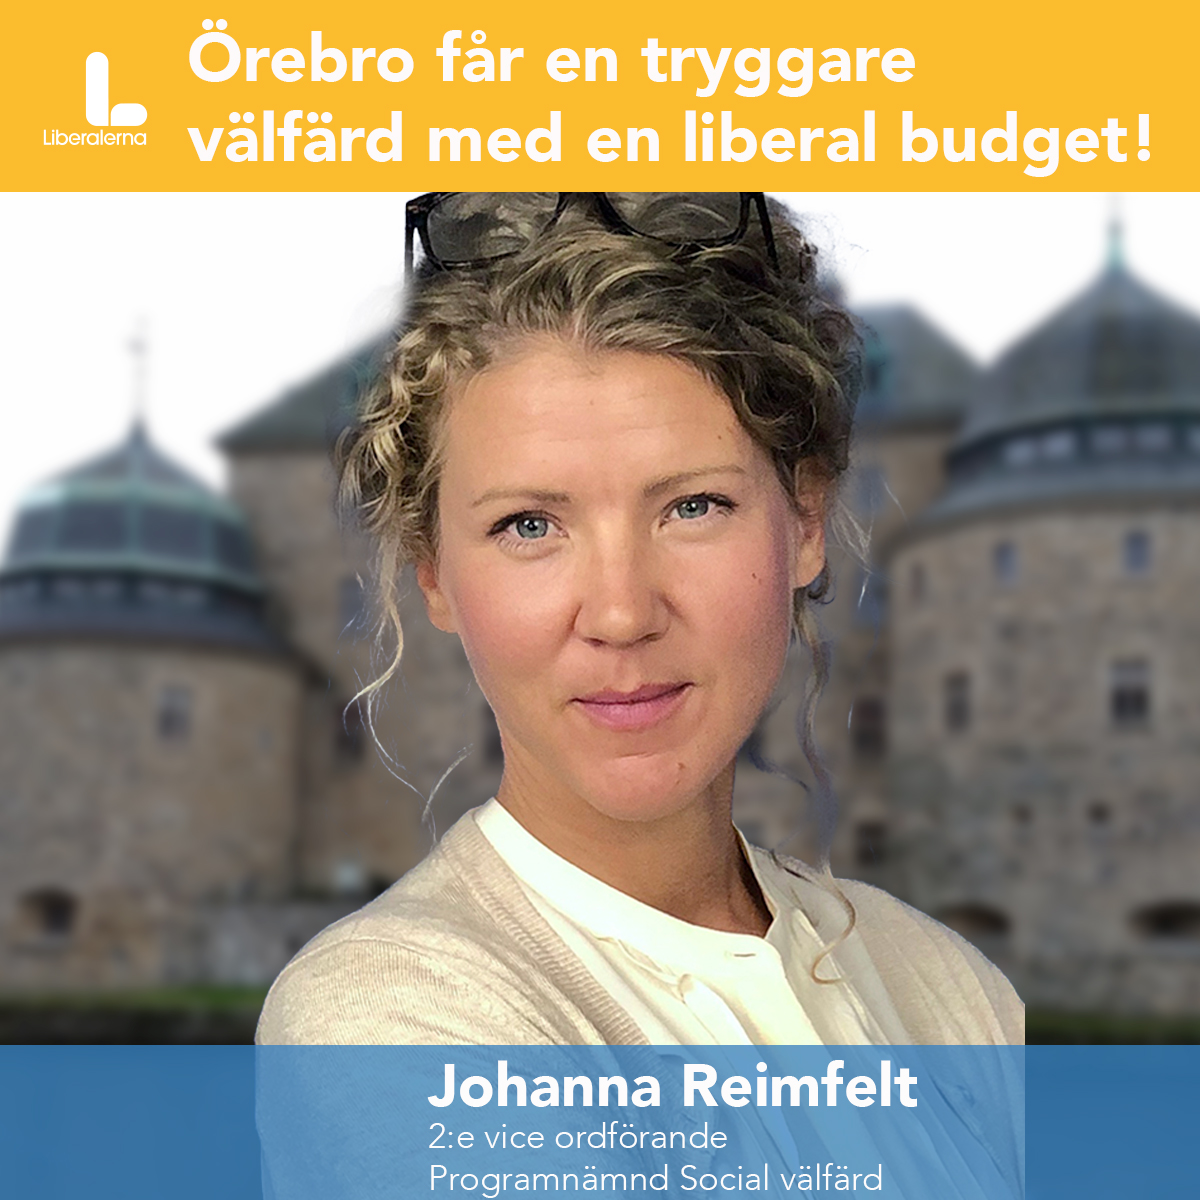 Johanna Reimfelt, Liberalerna Örebro kommun 2:e vice ordförande Programnämnd Social välfärd